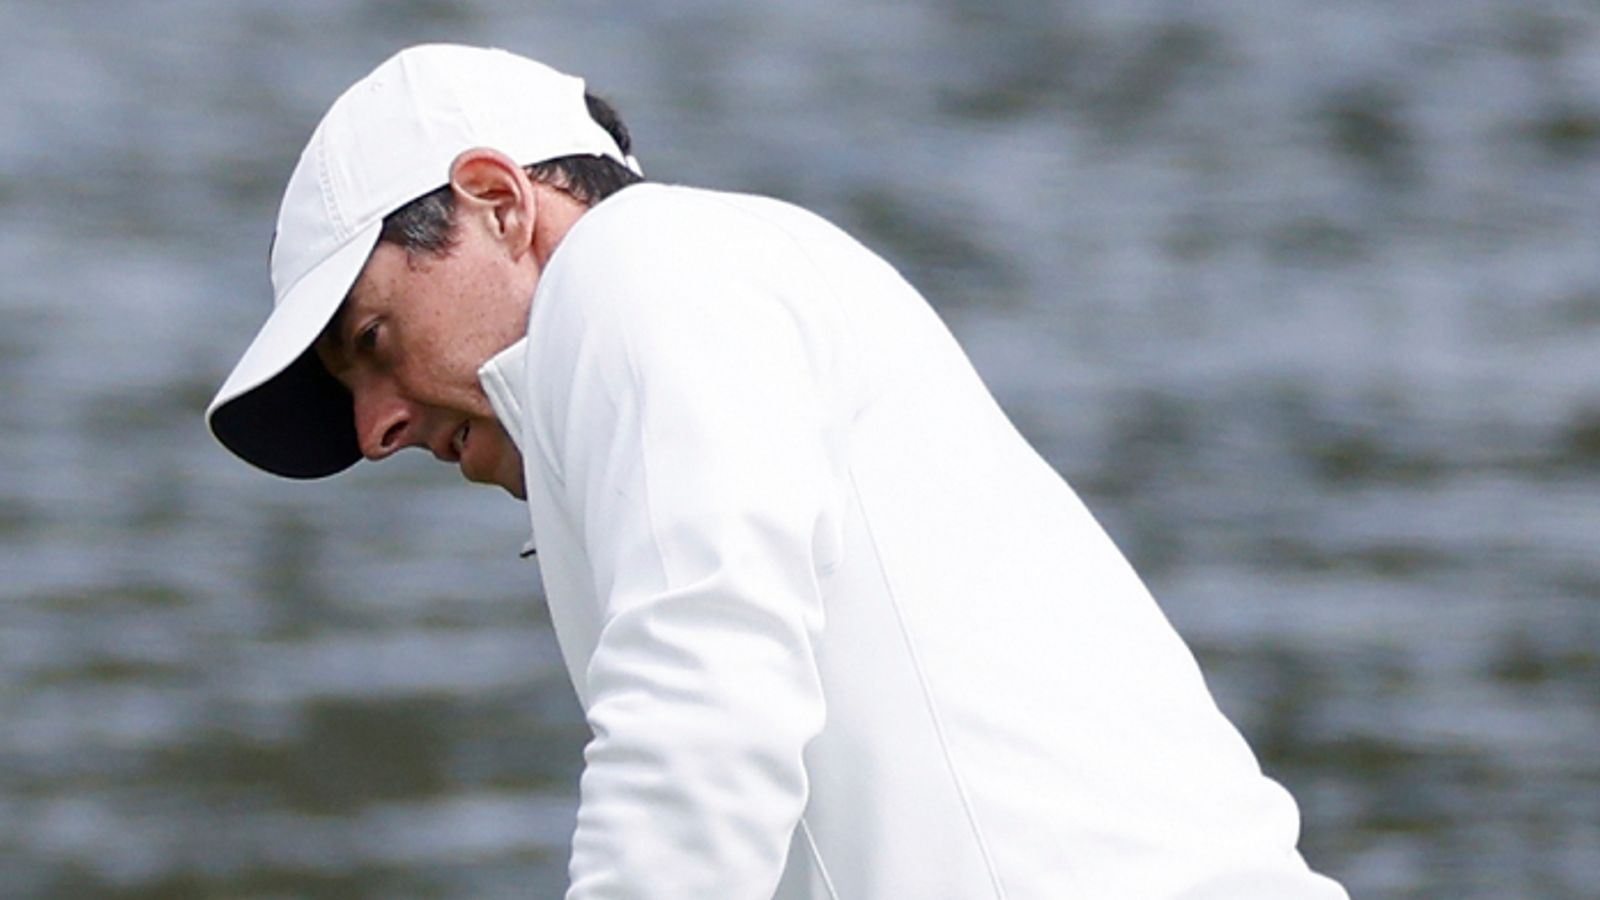 Los jugadores: Rory McIlroy preocupado por perder el corte nuevamente mientras Justin Thomas disfruta de una ronda sin imperfecciones |  Noticias de Golf